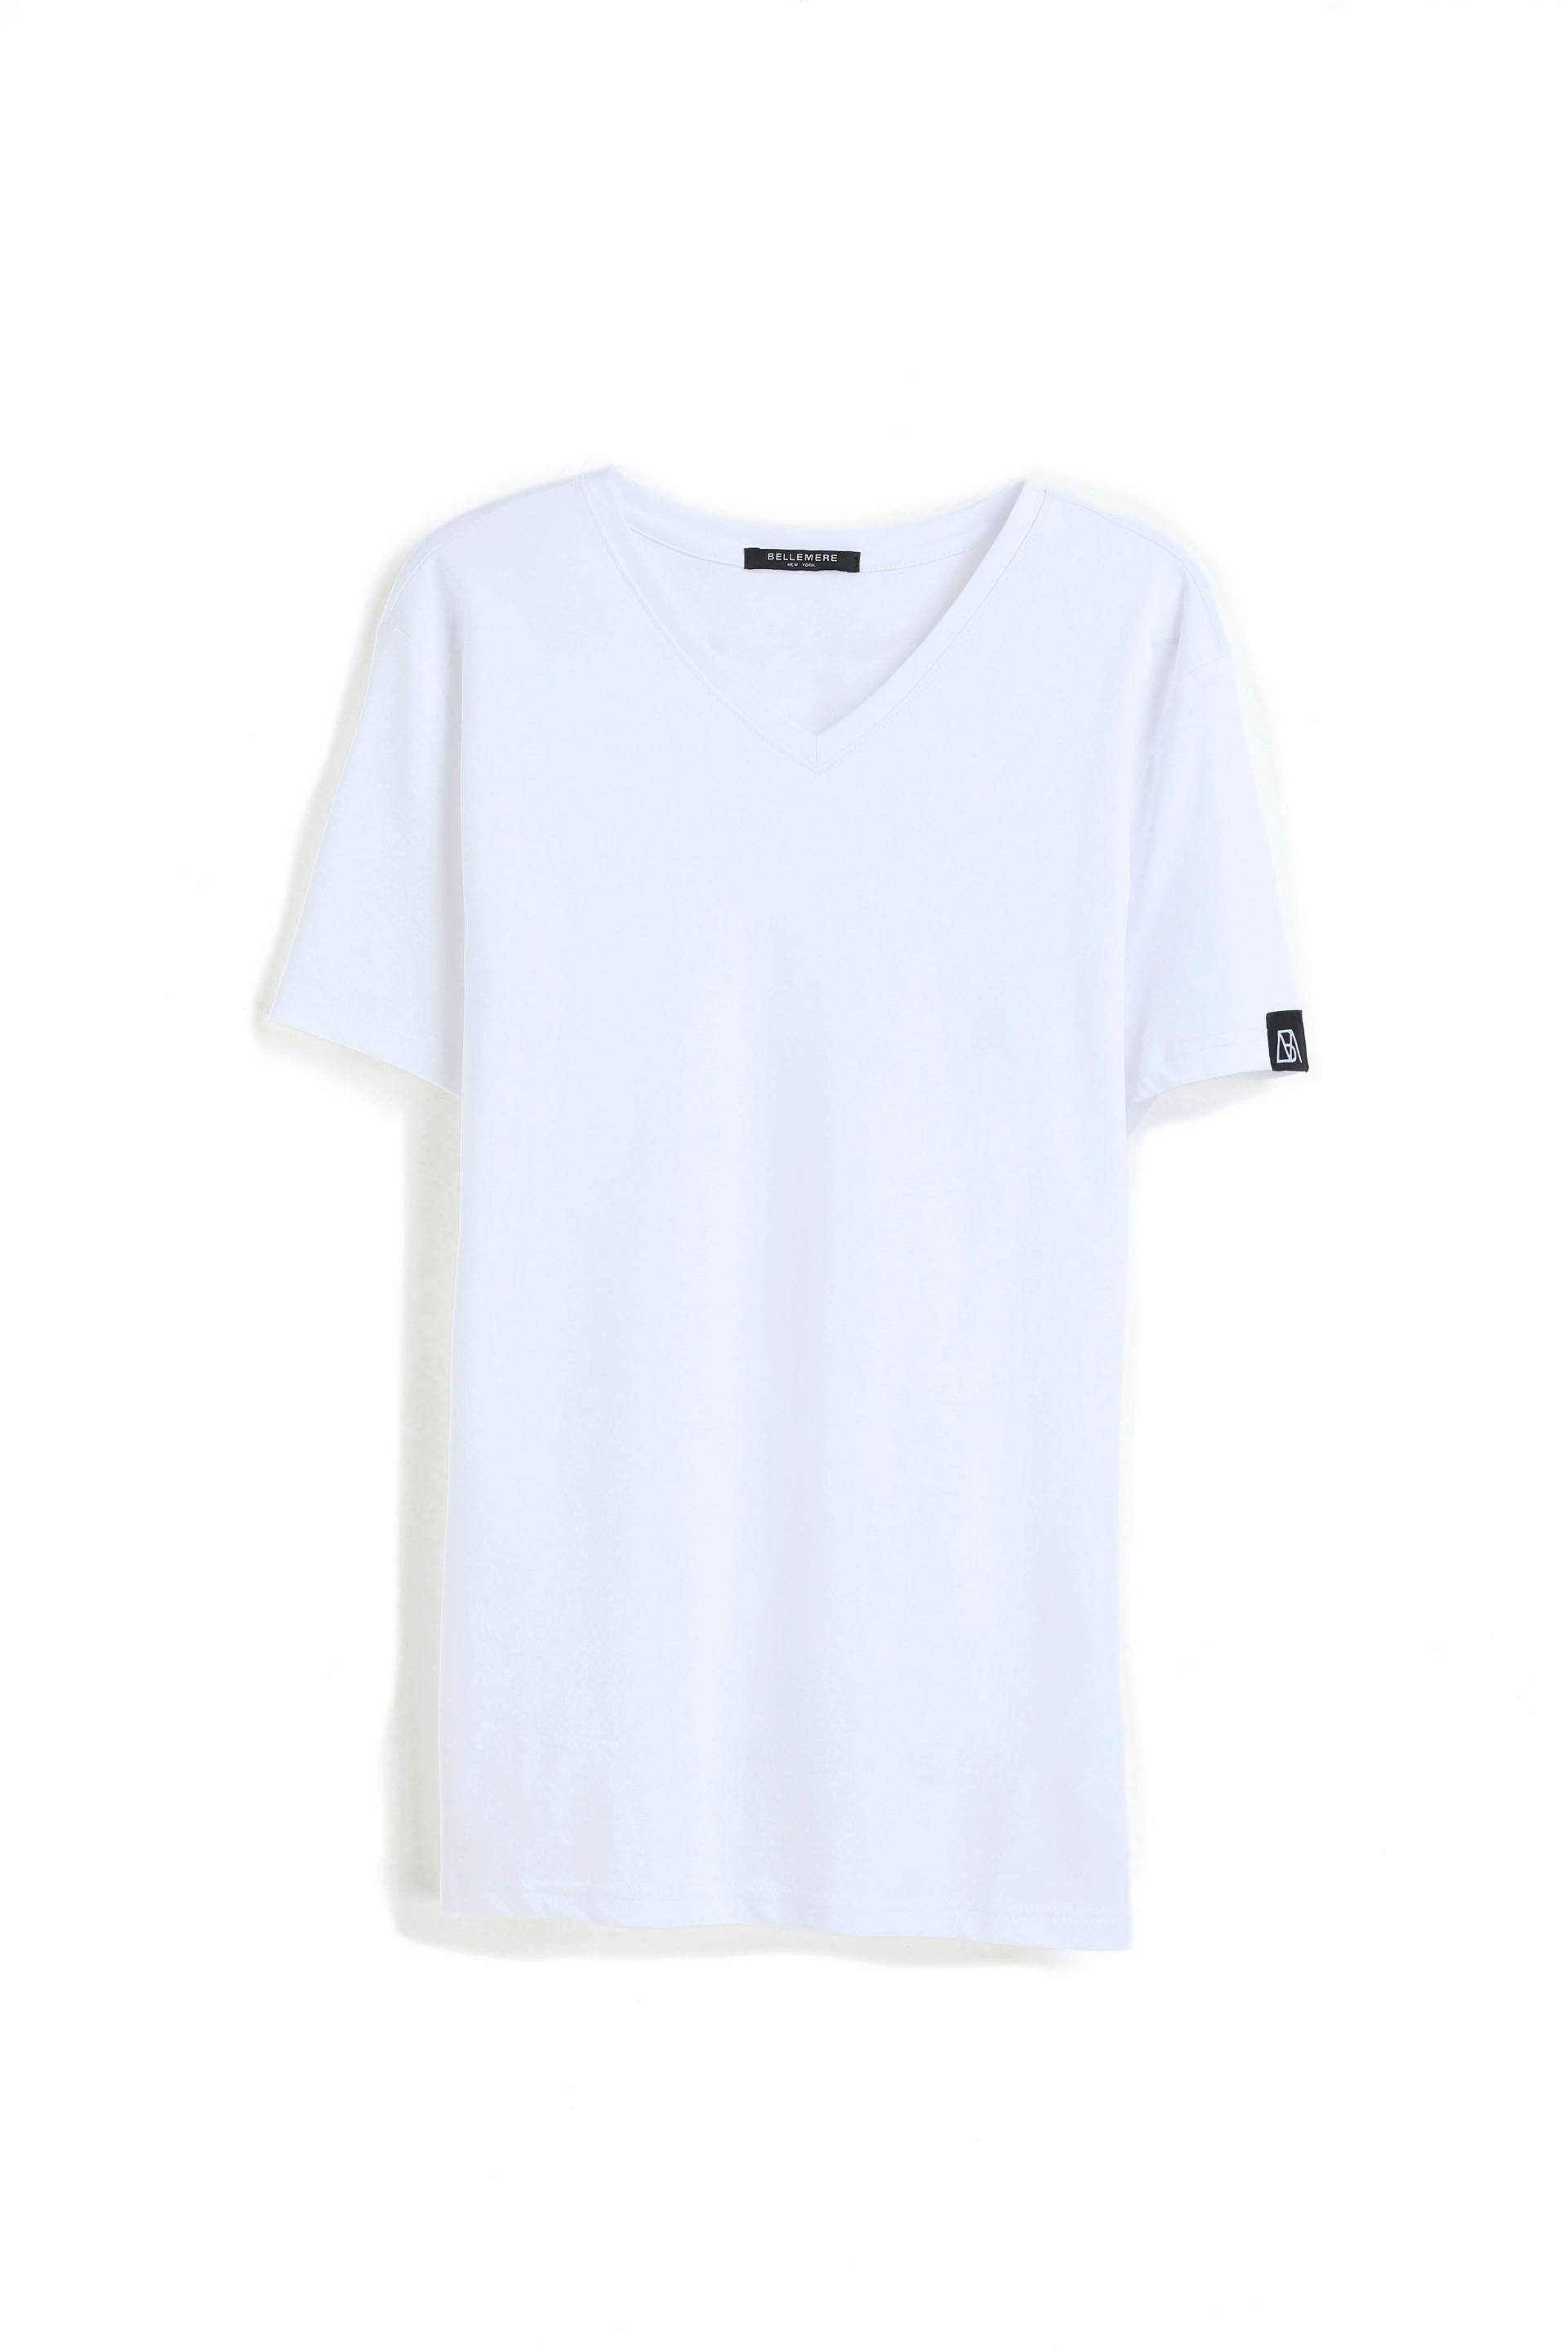 Grandioses T-shirt Aus Merzerisierter Baumwolle Mit V-ausschnitt Herren Weiss L von Bellemere New York